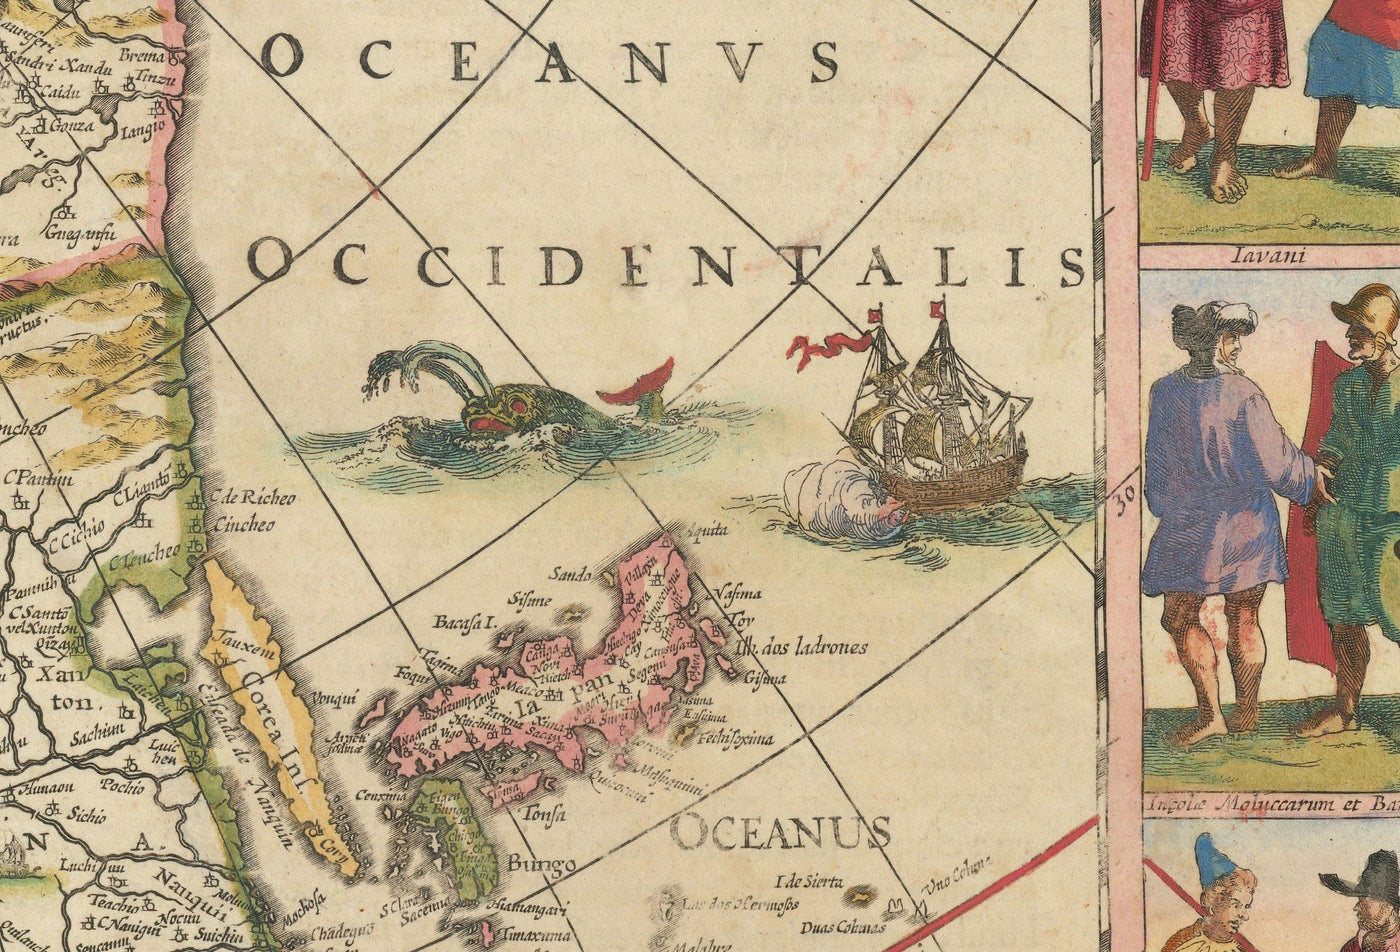 Ancienne carte d'Asie, 1640 par Willem Blaeu - Indes orientales coloniales - Chine, Inde, Malaisie, Singapour, Thaïlande, Philippines